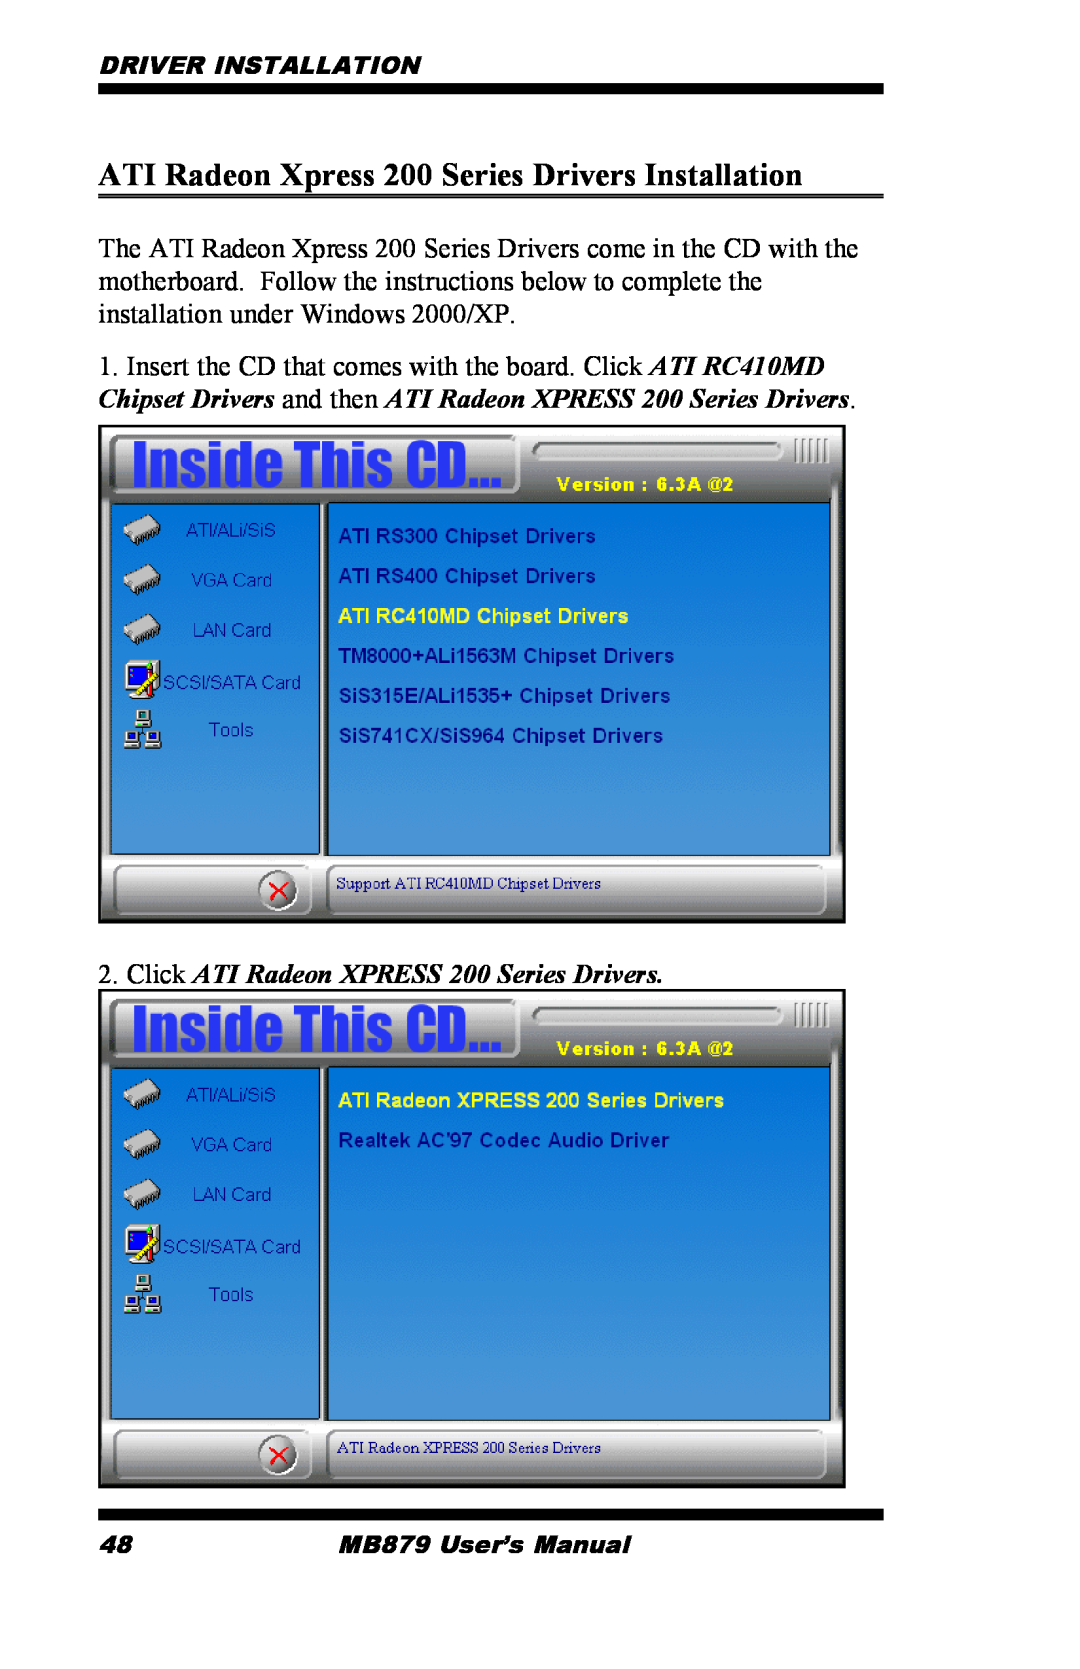 Intel MB879 user manual ATI Radeon Xpress 200 Series Drivers Installation, Click ATI Radeon XPRESS 200 Series Drivers 